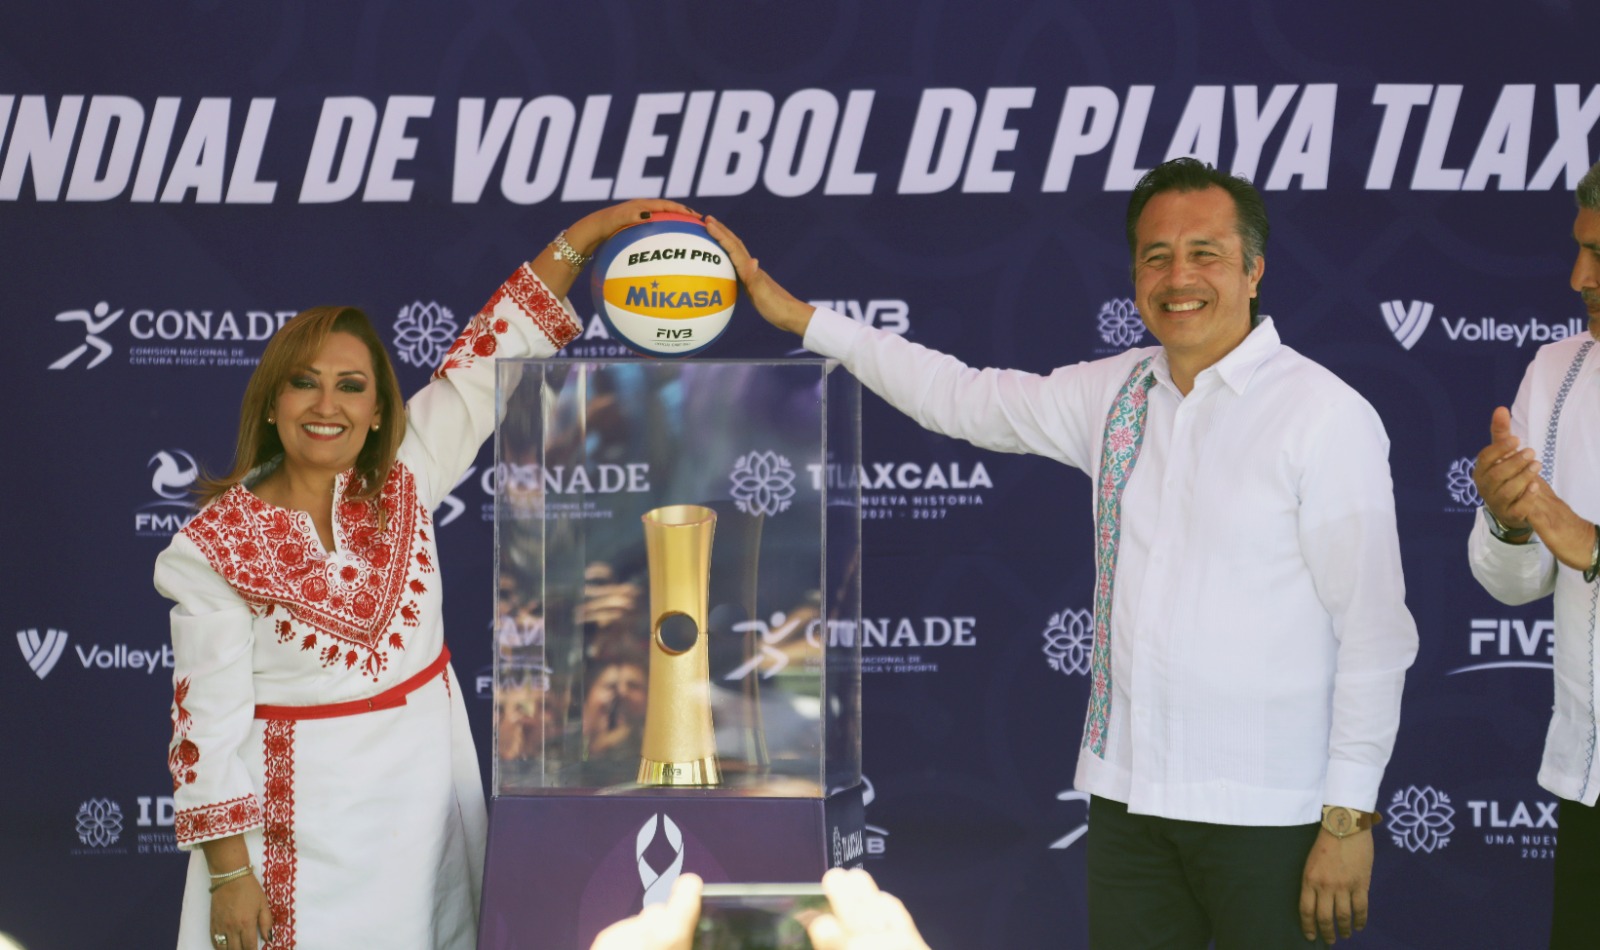 Gobierno de Veracruz y Tlaxcala impulsan el deporte, presentan Campeonato Mundial de Voleibol de Playa